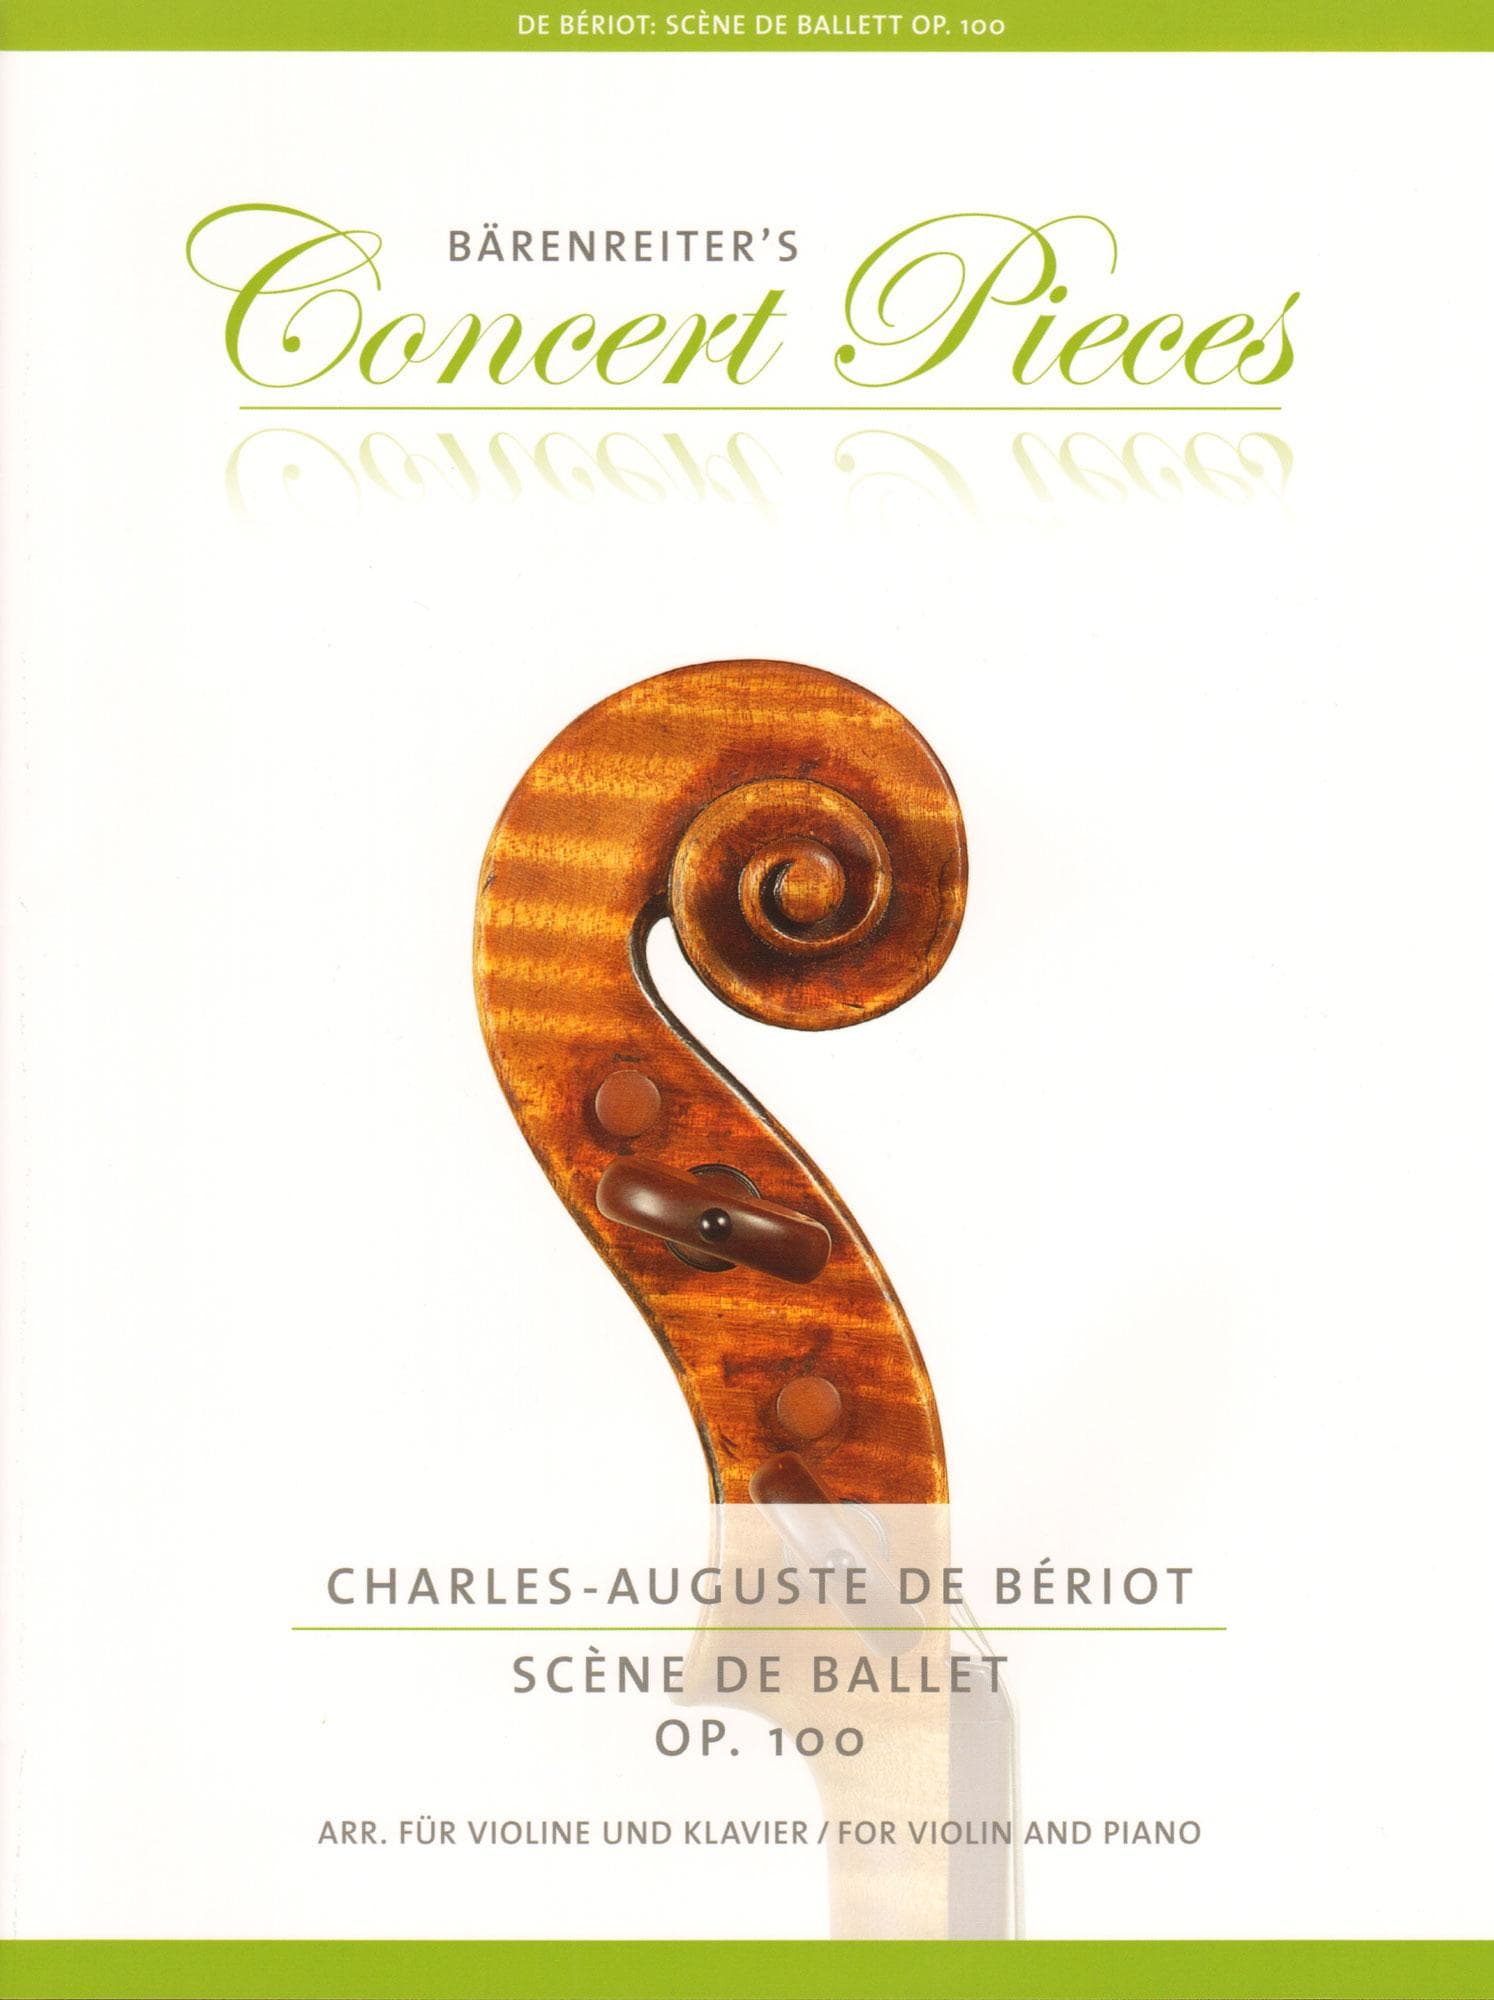 Charles-Auguste de Beriot - Scene de Ballet, Op. 100 - for Violin and Piano - Barenreiter's Concert Pieces